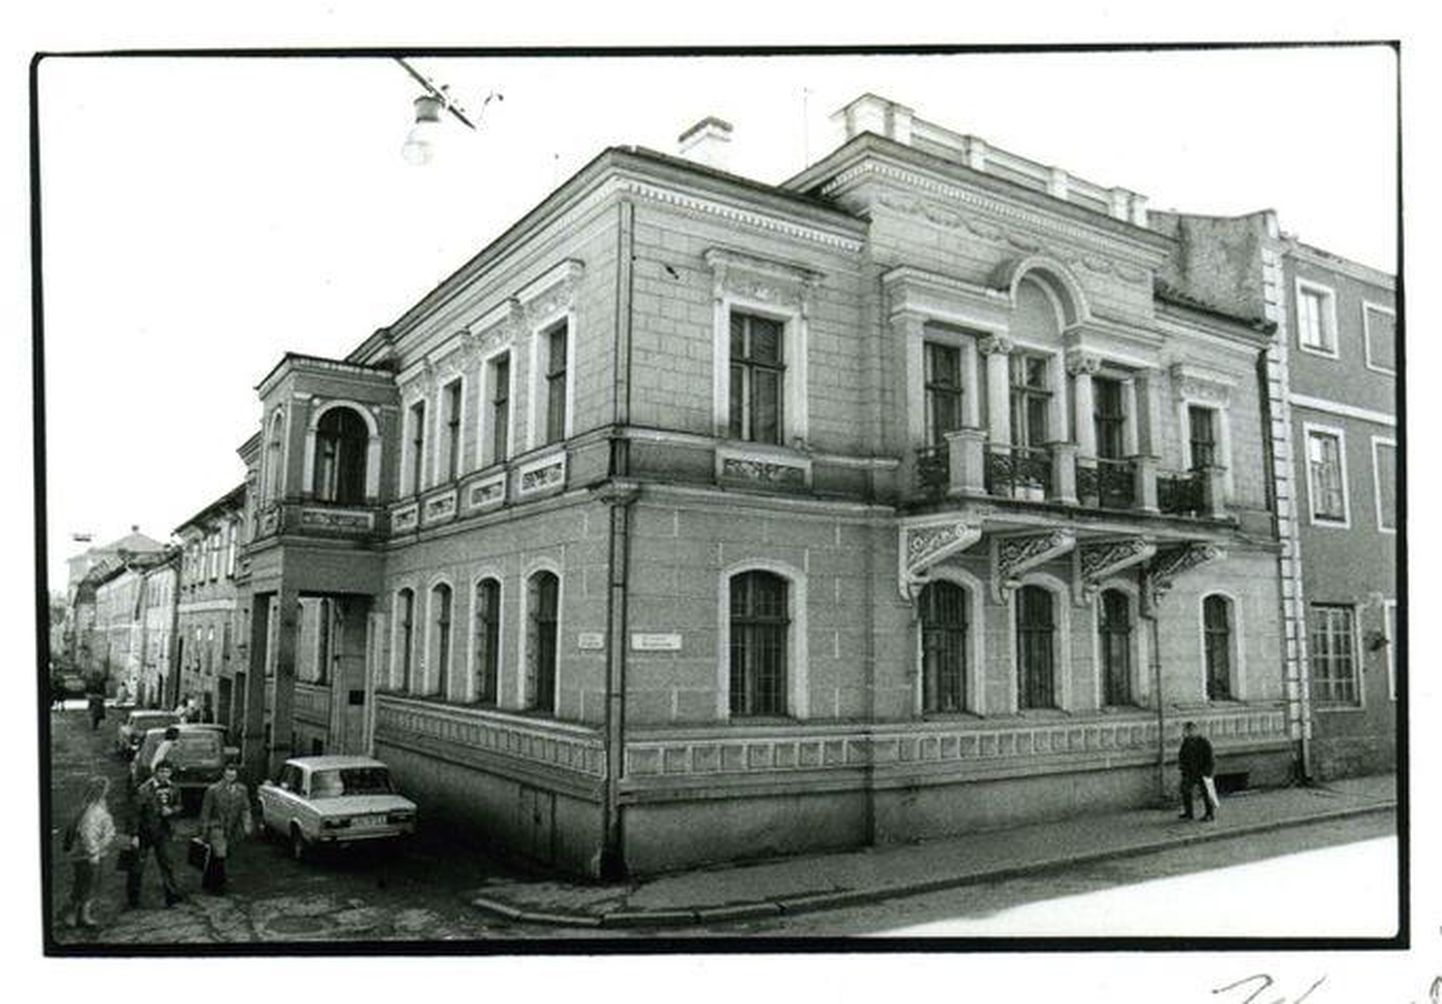 30 aastat tagasi öeldi Edasi toimetuse asukohaks „Pirogovi ja Ülikooli tänava nurgal“. Nikolai Pirogovi tänavast on saanud Gildi tänav, Ülikooli tänav aga jäänud Ülikooli tänavaks.